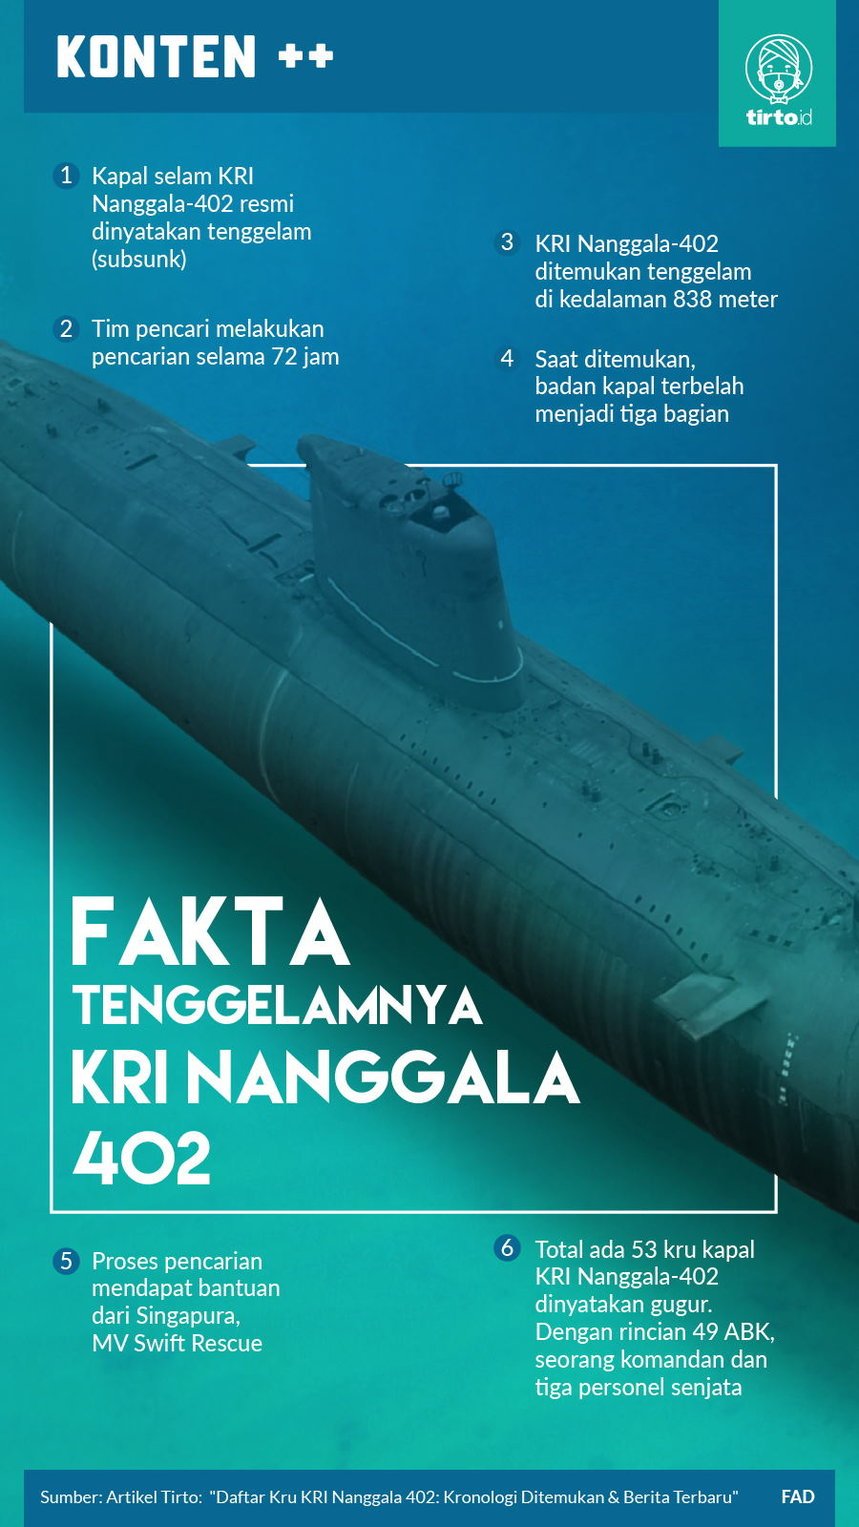 Apakah kapal selam nanggala 402 sudah ditemukan